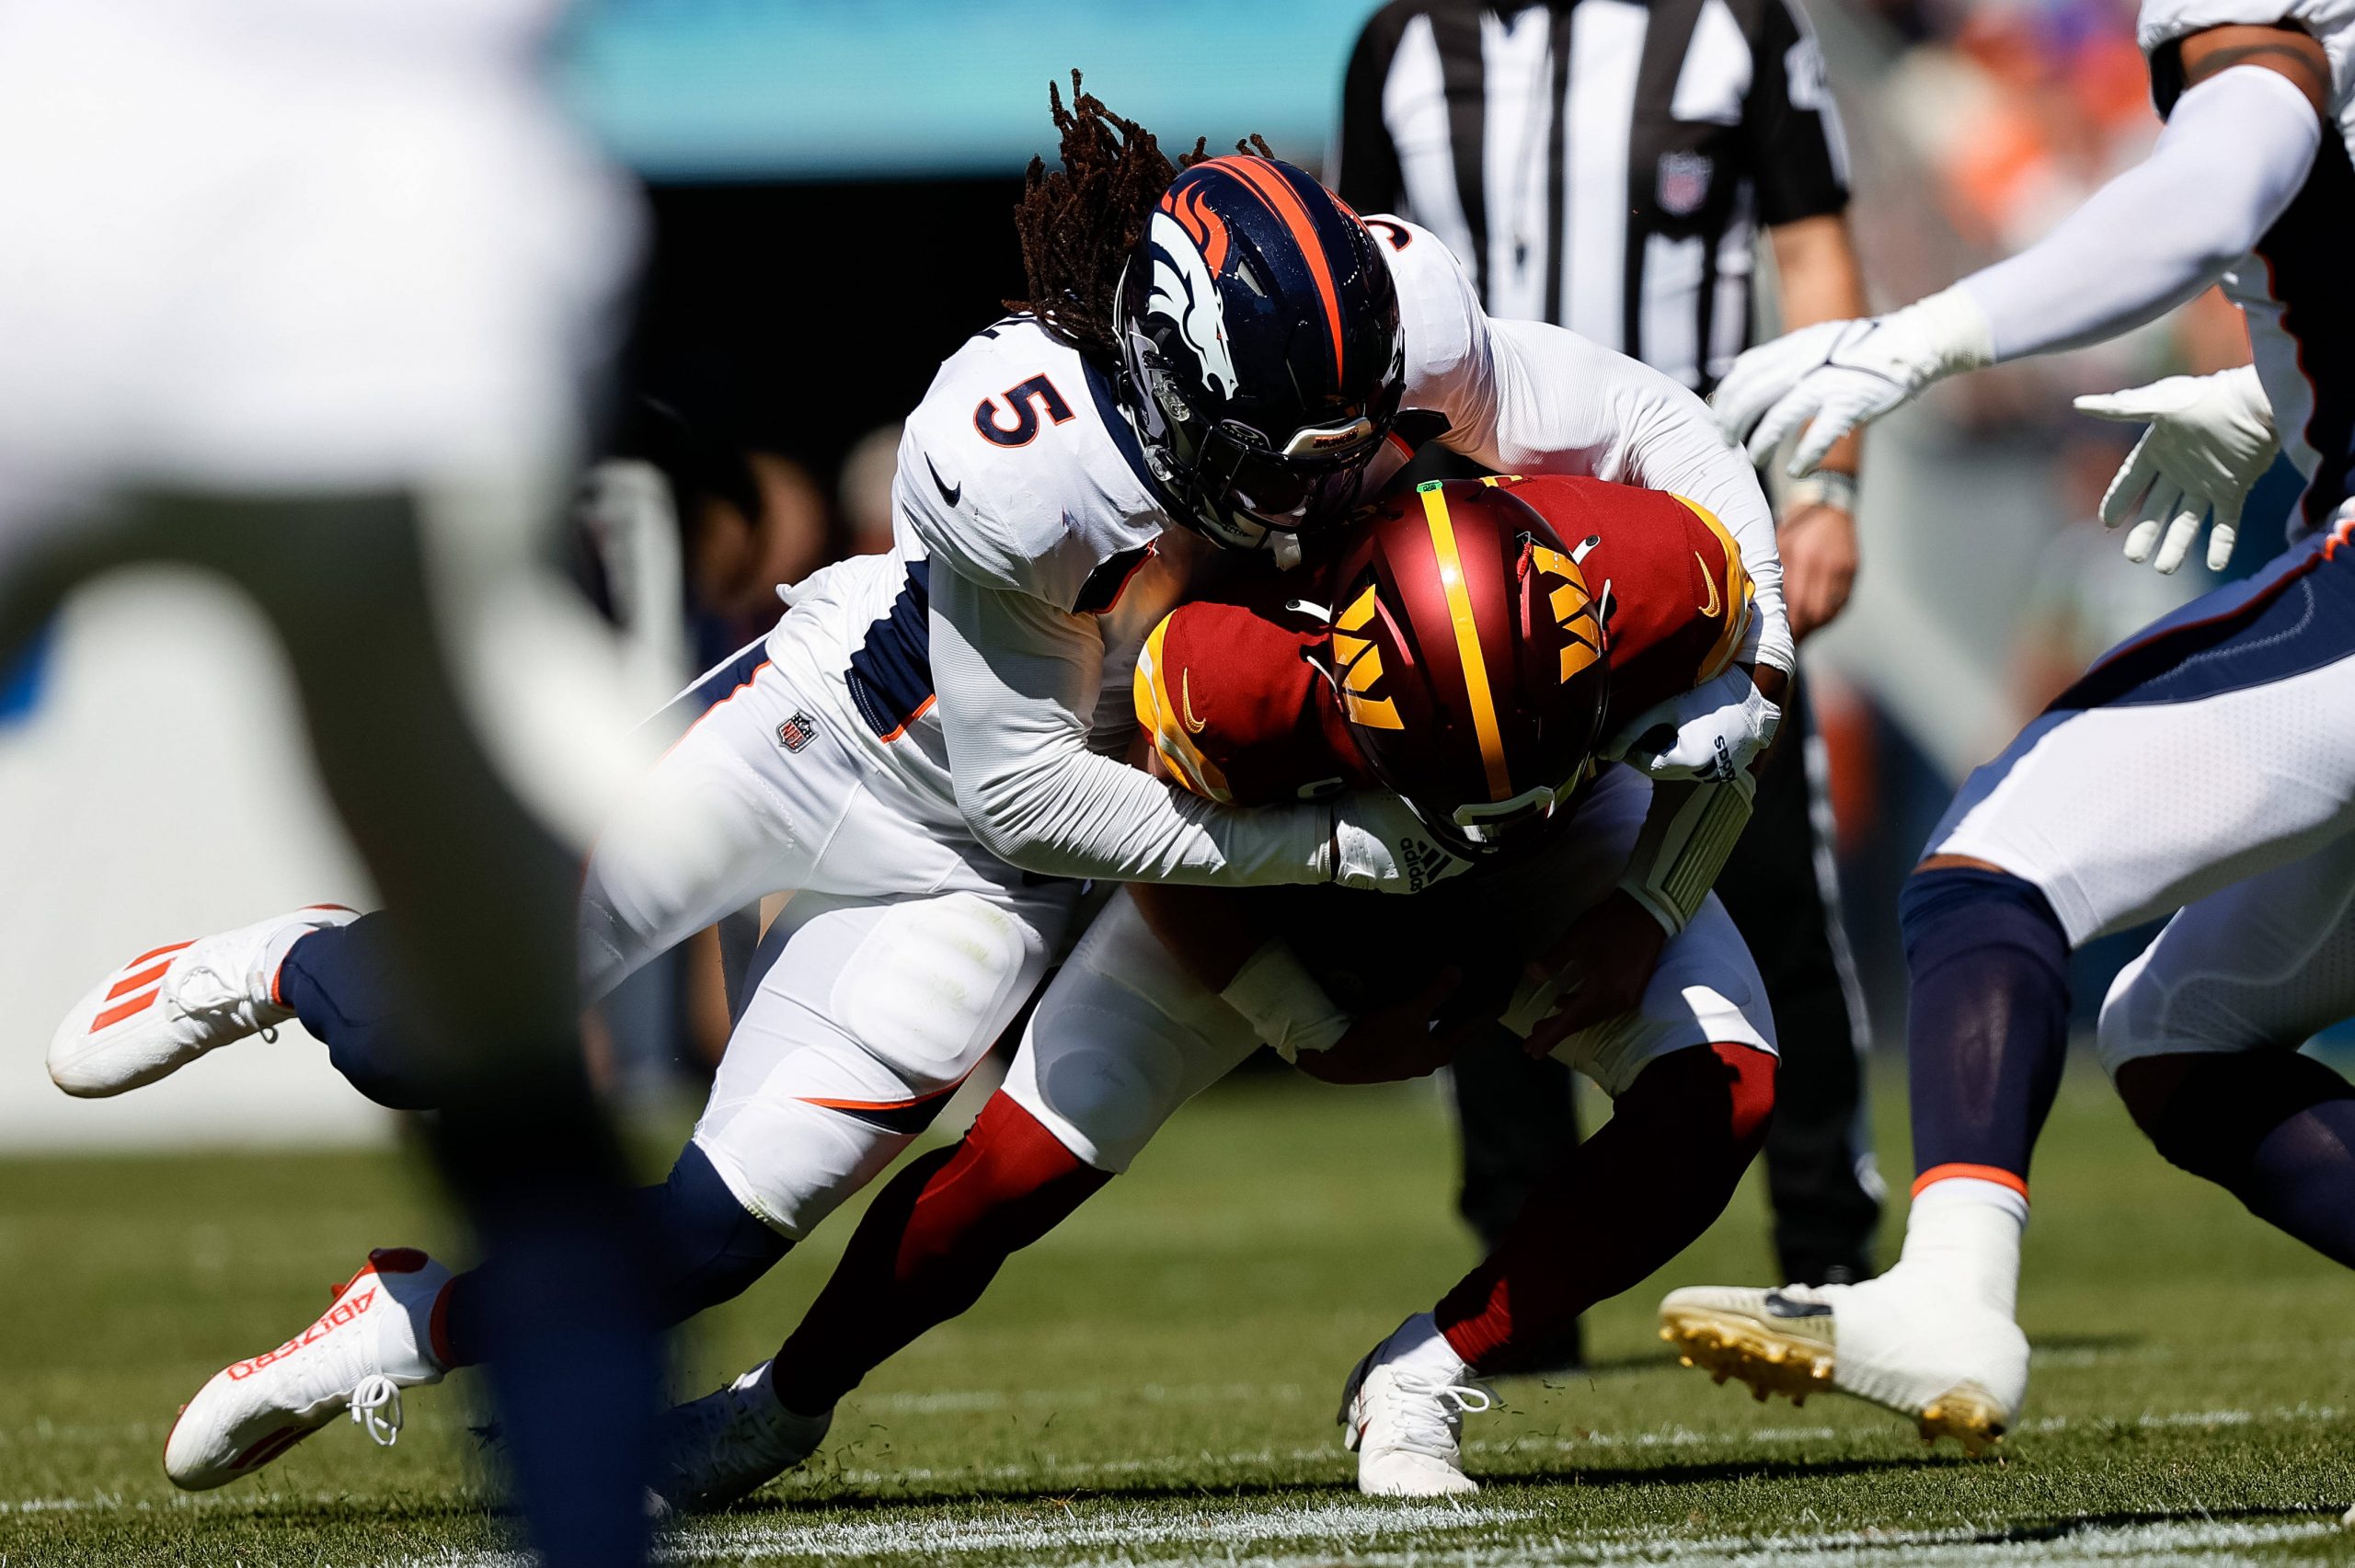 FootballR - NFL - Spiel zwischen den Denver Broncos und den Washington Commanders. Randy Gregory Tackle